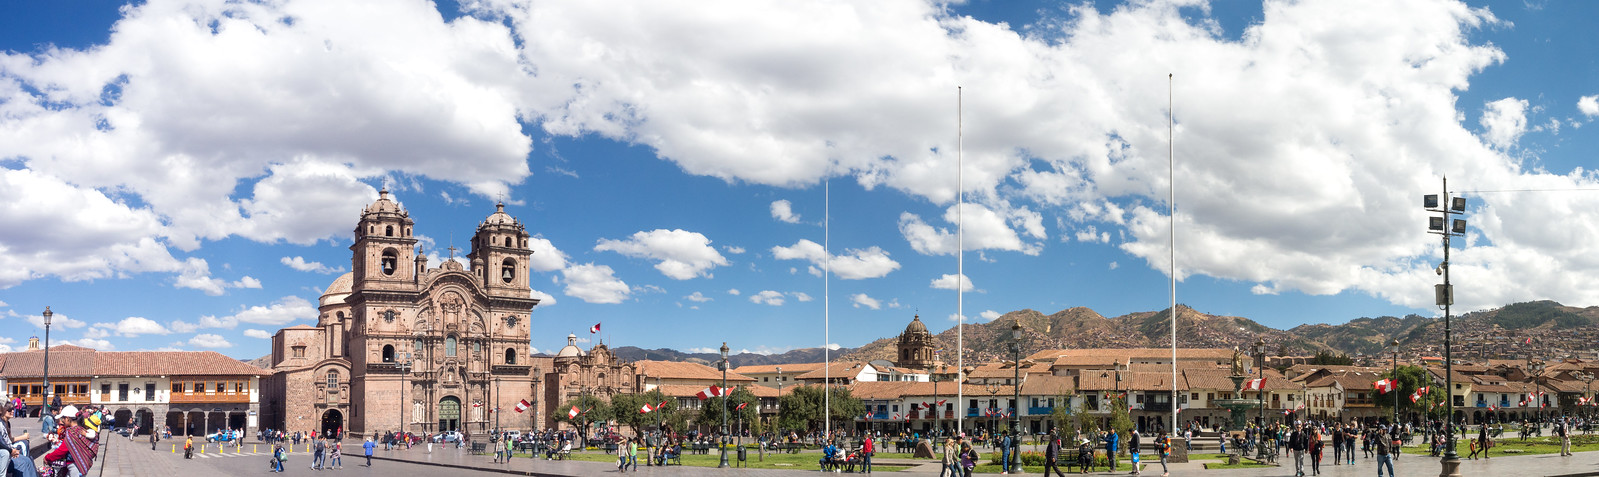 ...Q'osqo  ..Cuzco            .UNESCO.SITE